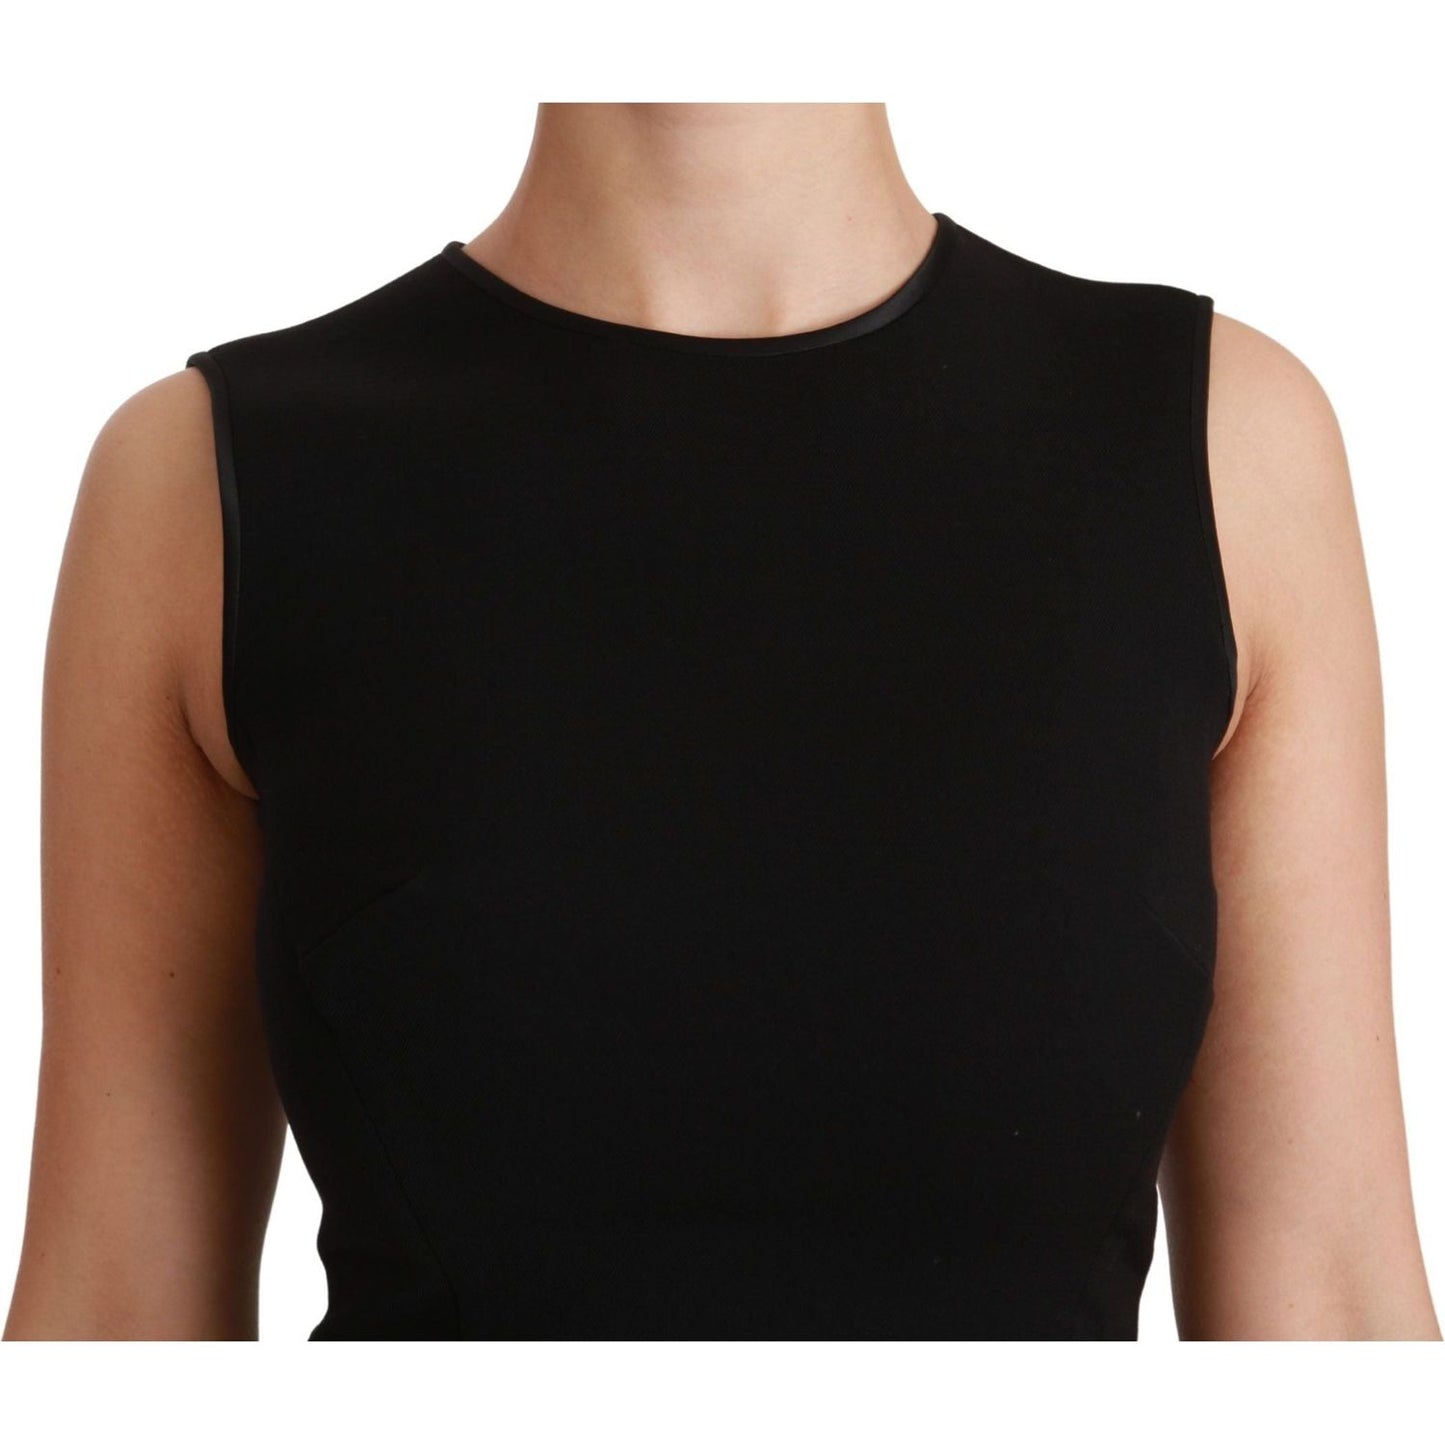 Dolce & Gabbana Elegant Black Fit Flare Wool Blend Dress black-fit-flare-wool-stretch-sheath-dress WOMAN DRESSES IMG_6968-scaled-9e6e4497-f70.jpg